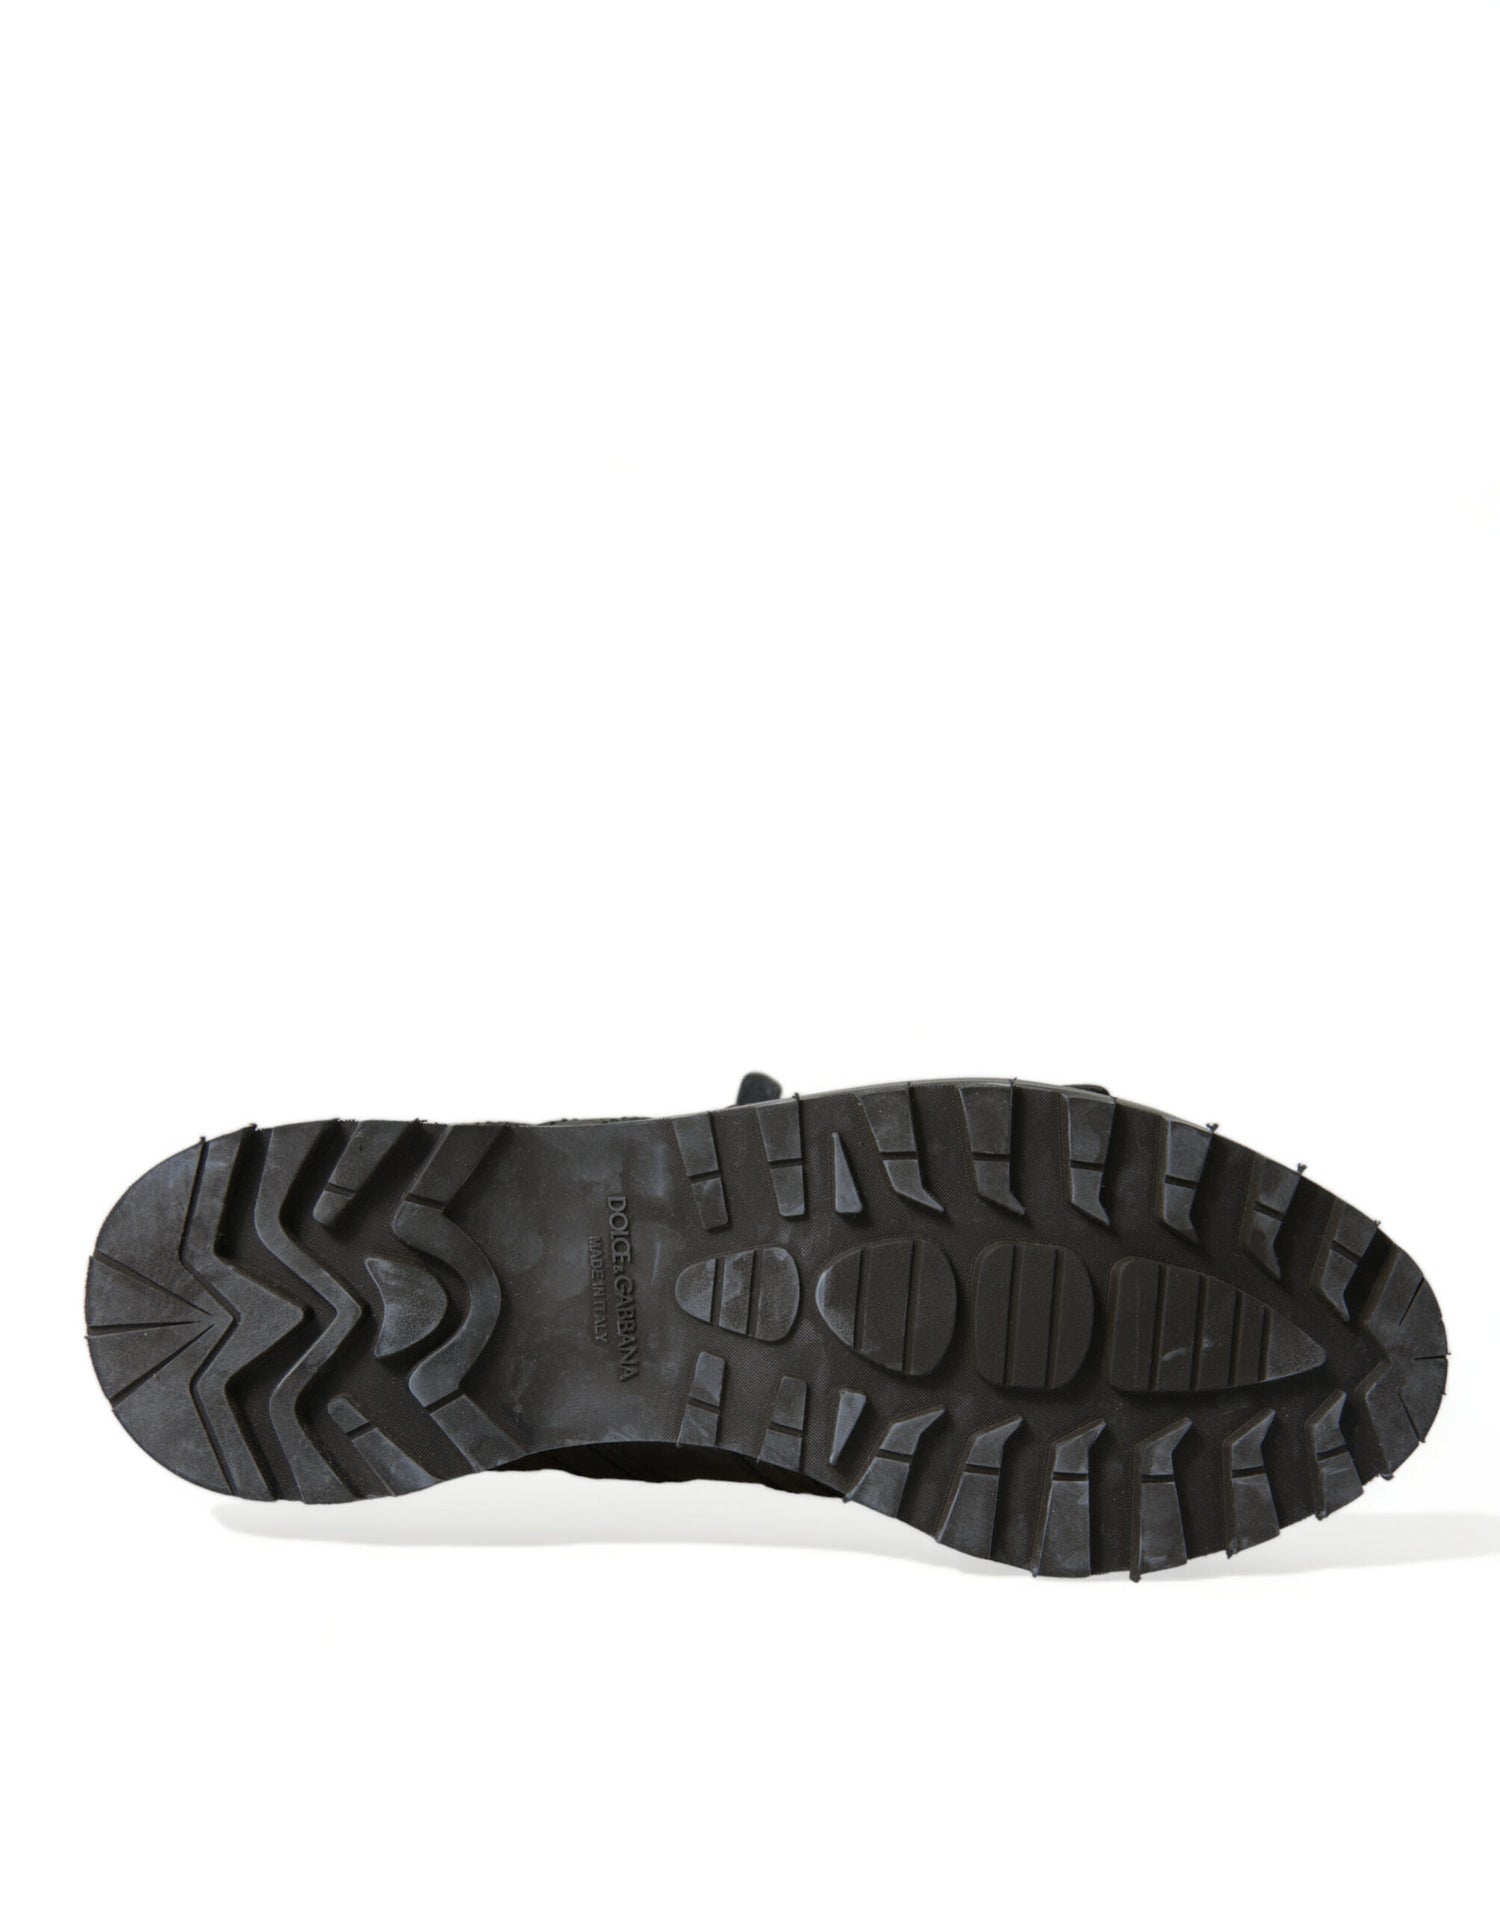 Dolce & Gabbana Black Leather Strap Men Ankle Boots Shoes - DEA STILOSA MILANO